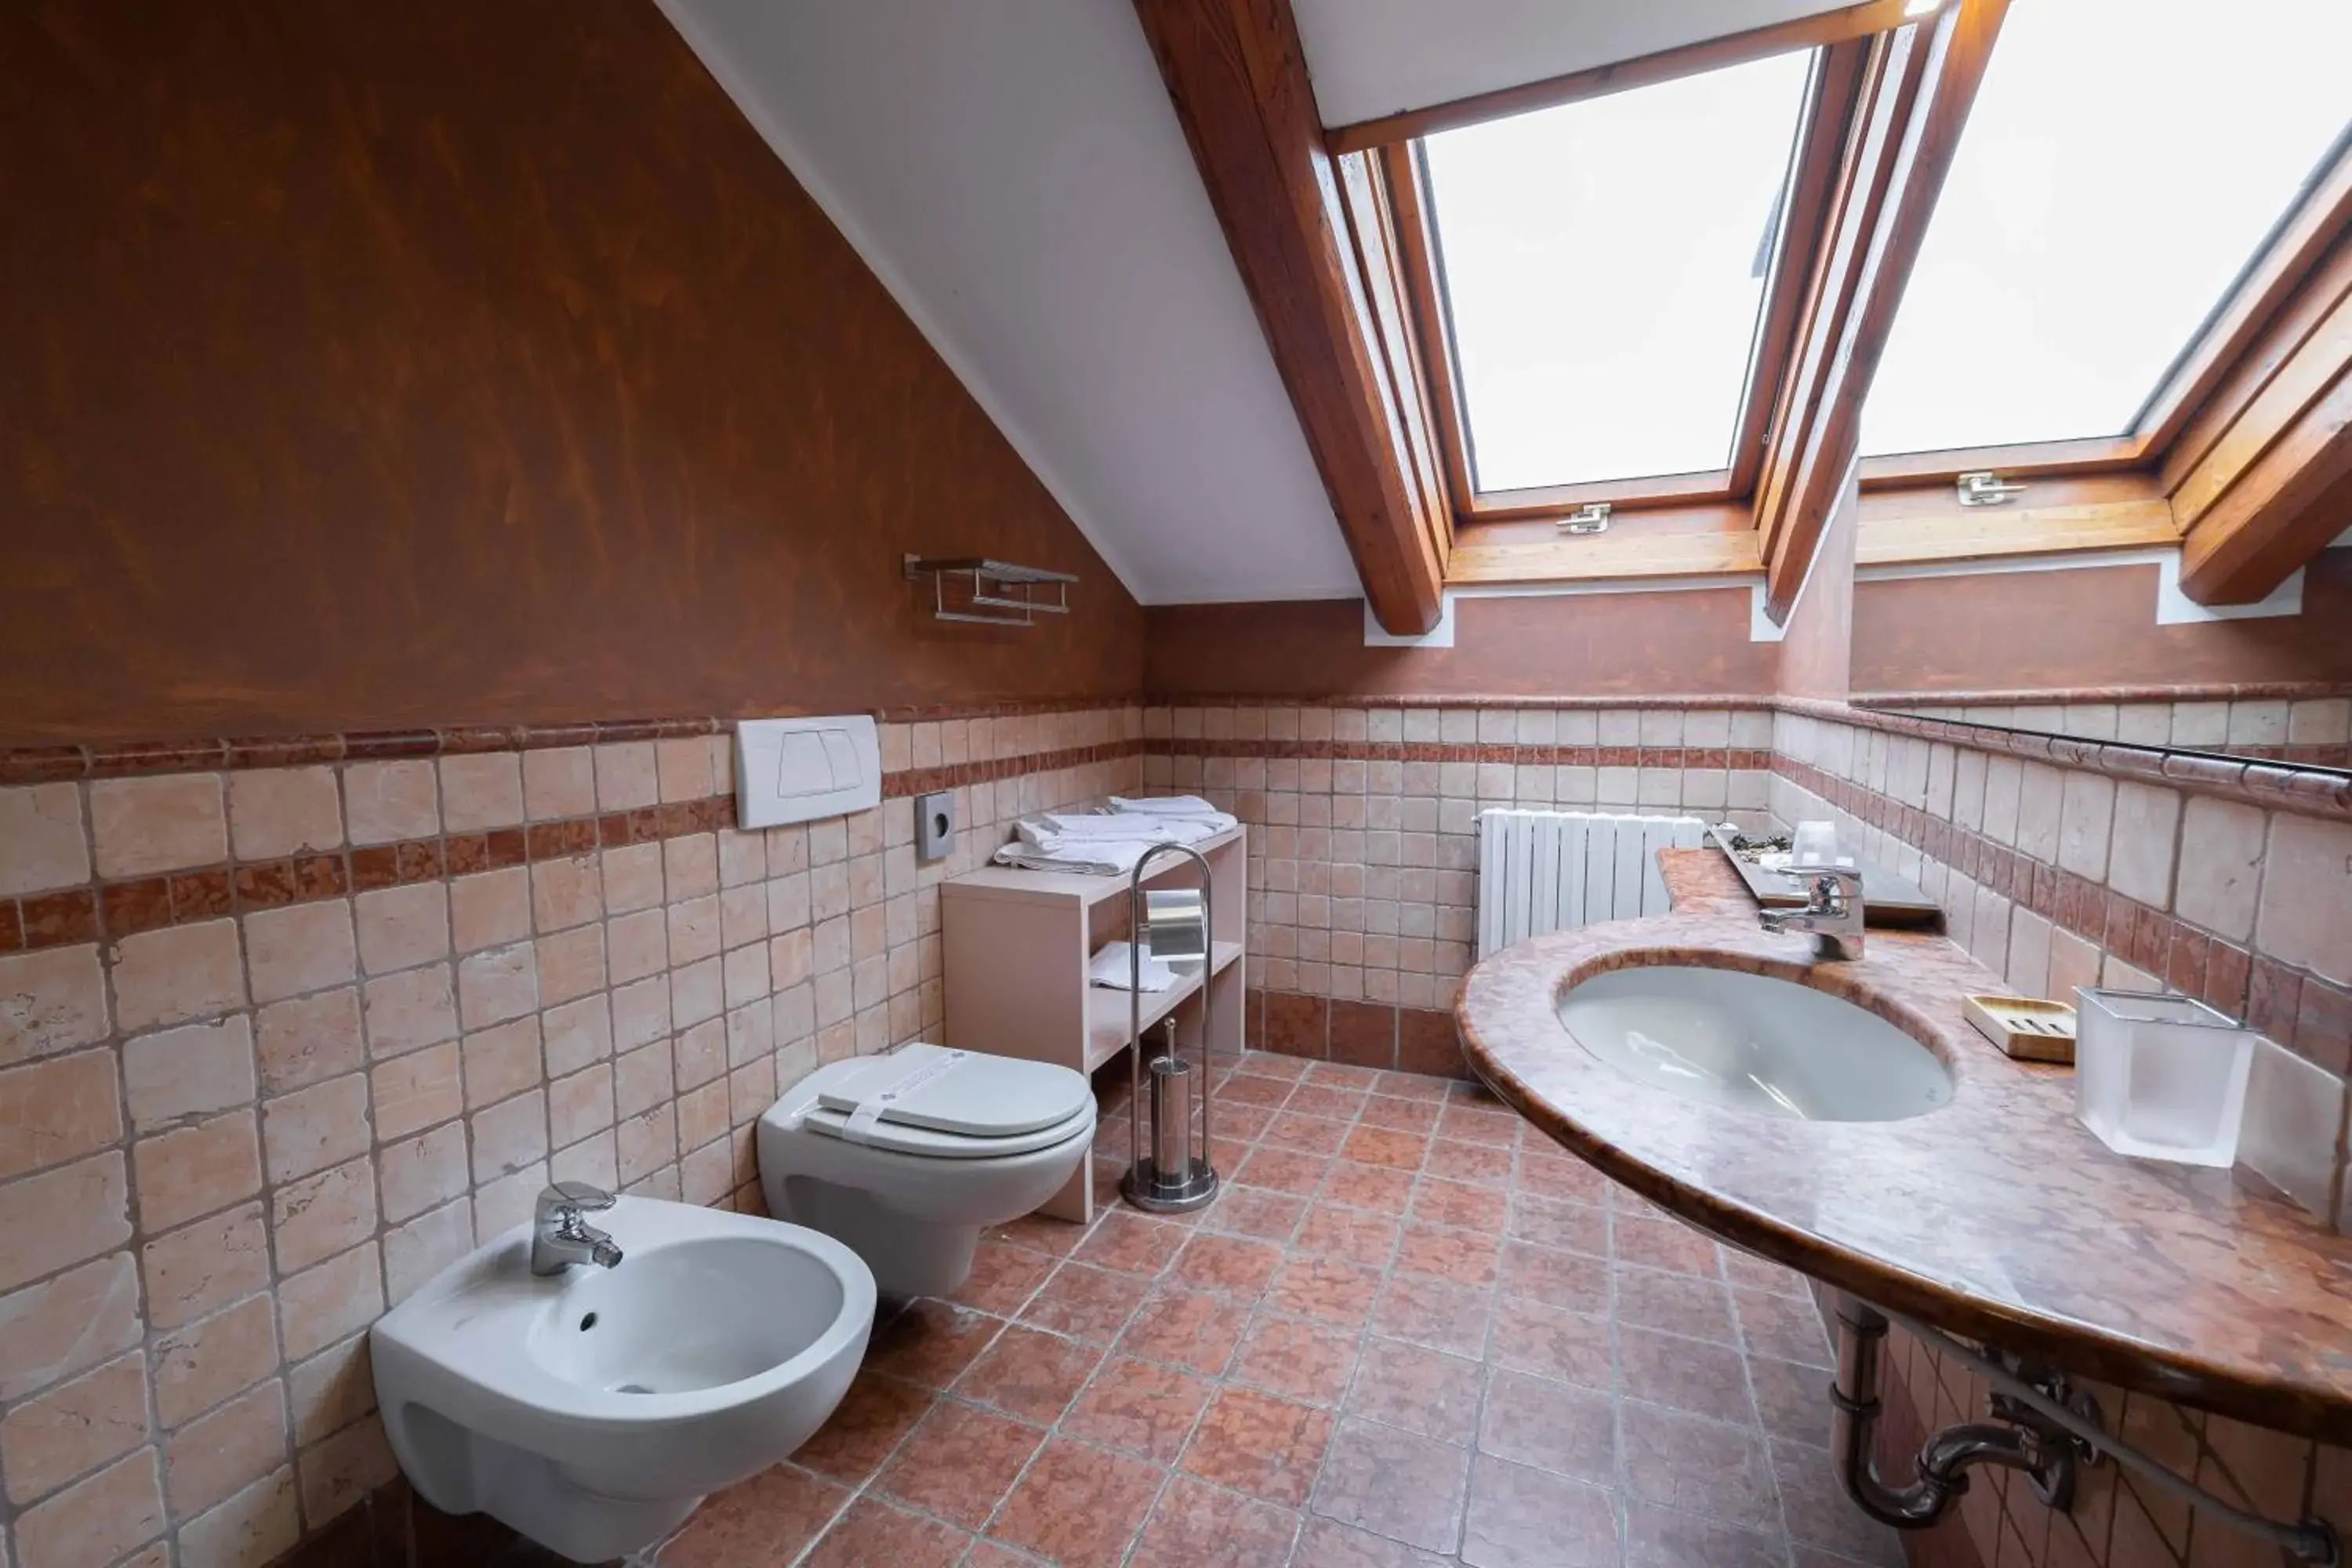 Toilet, Bathroom in Hotel La Fert